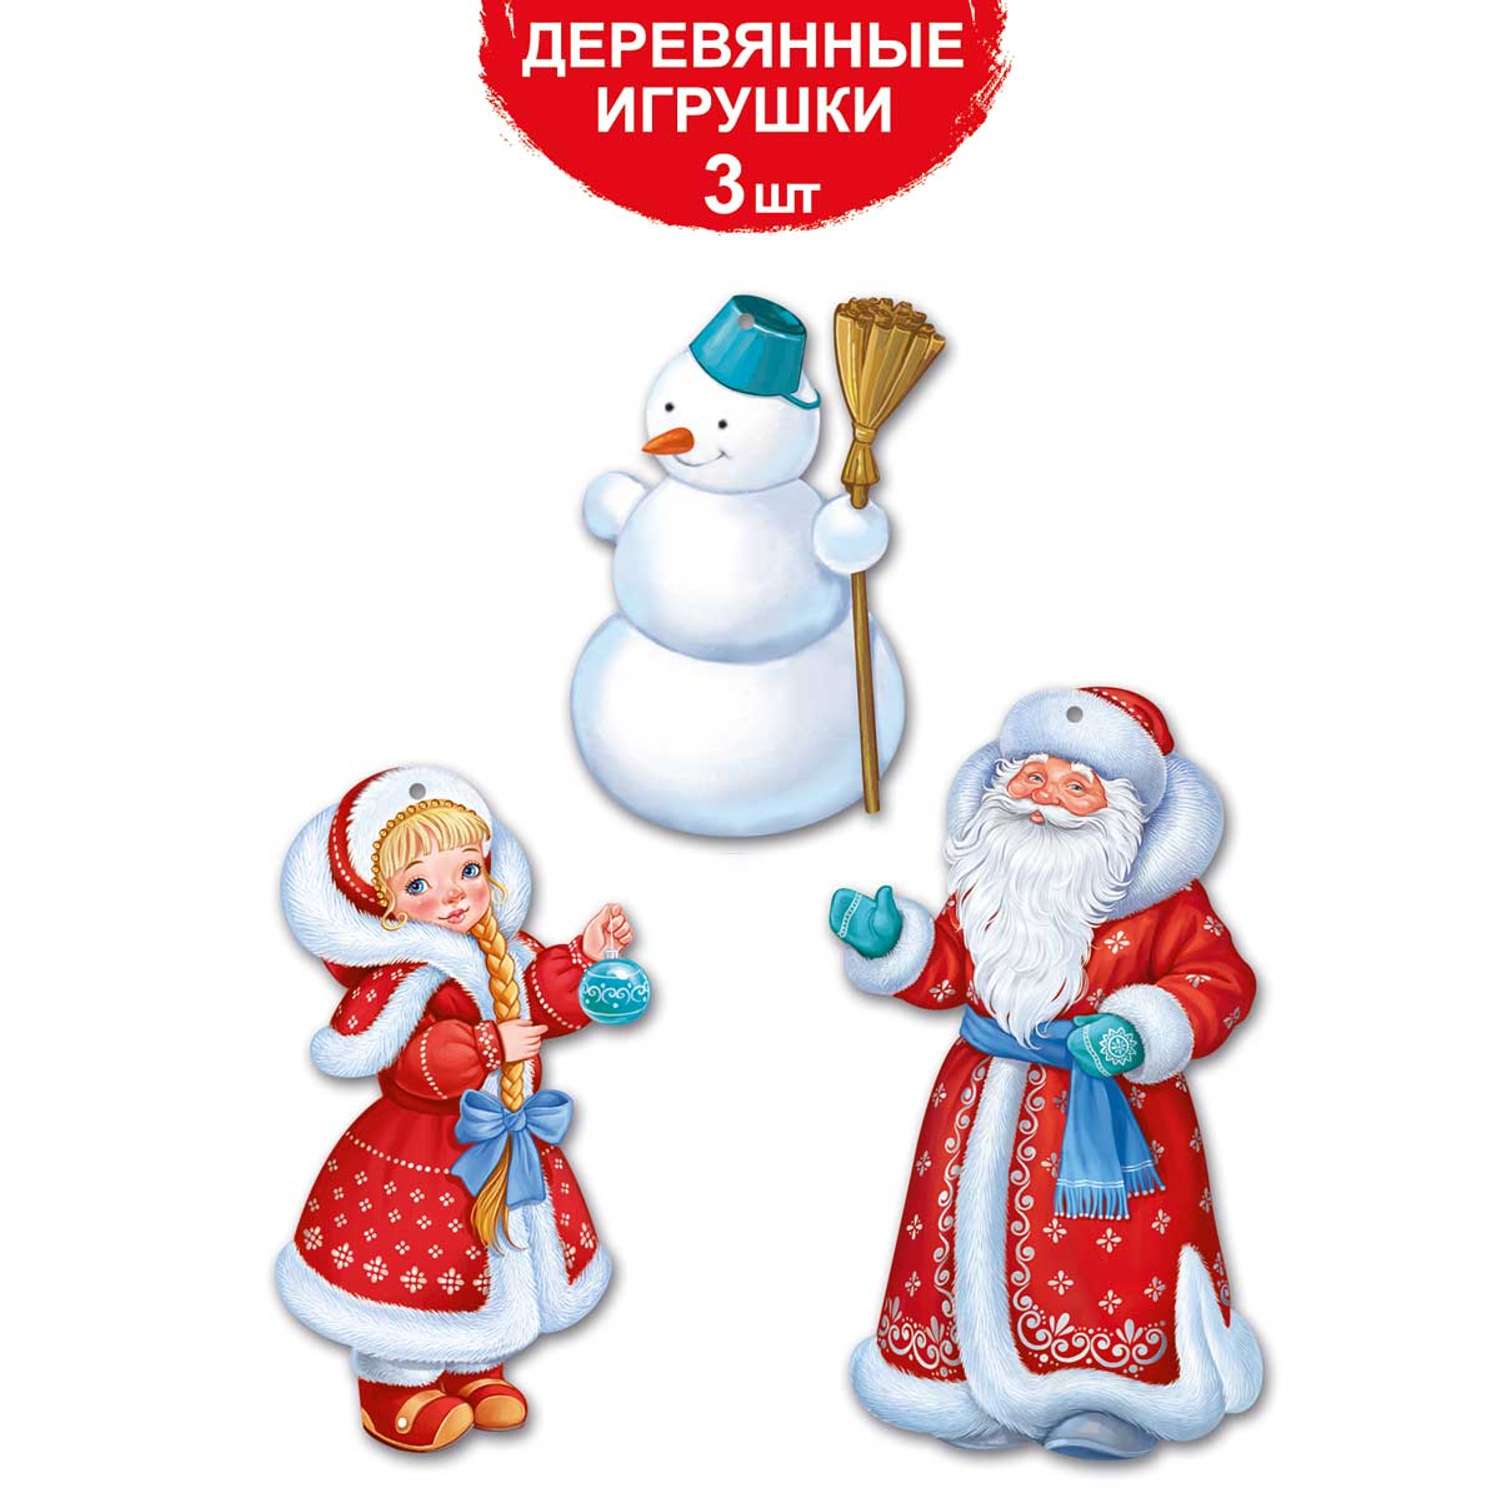 Новогодние елочные игрушки Империя поздравлений Дед Мороз и Снегурочка 3 шт - фото 1